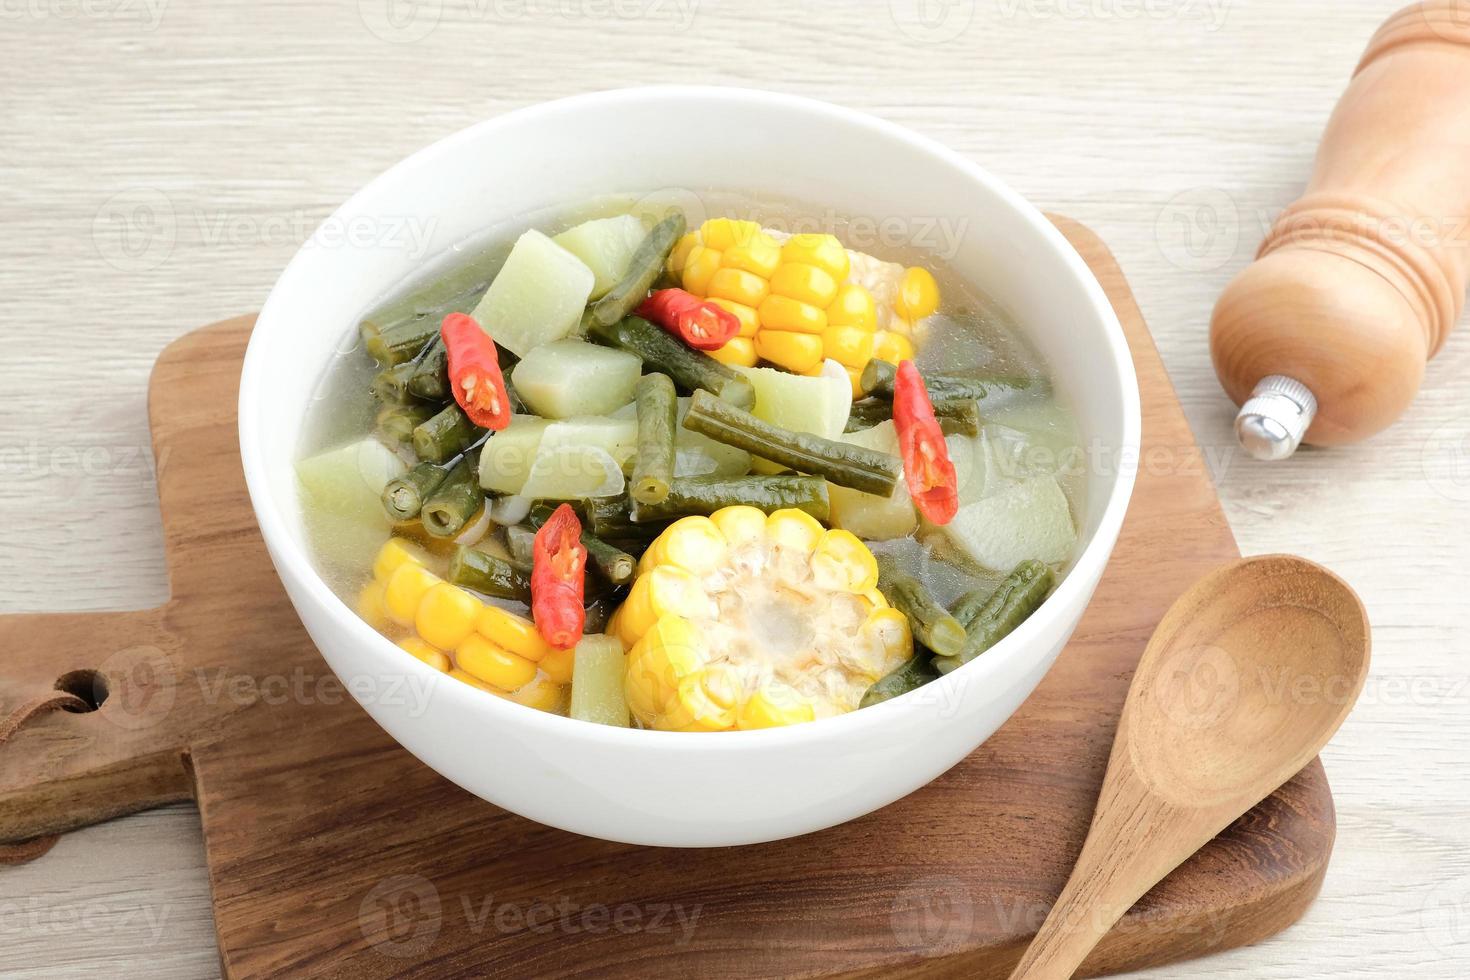 sayur asam, sayur asem o sopa de tamarindo es una popular sopa tradicional indonesia. los ingredientes comunes son chayote, frijoles largos y maíz con la adición de tamarindo o bilimbi. servido en tazón blanco. foto